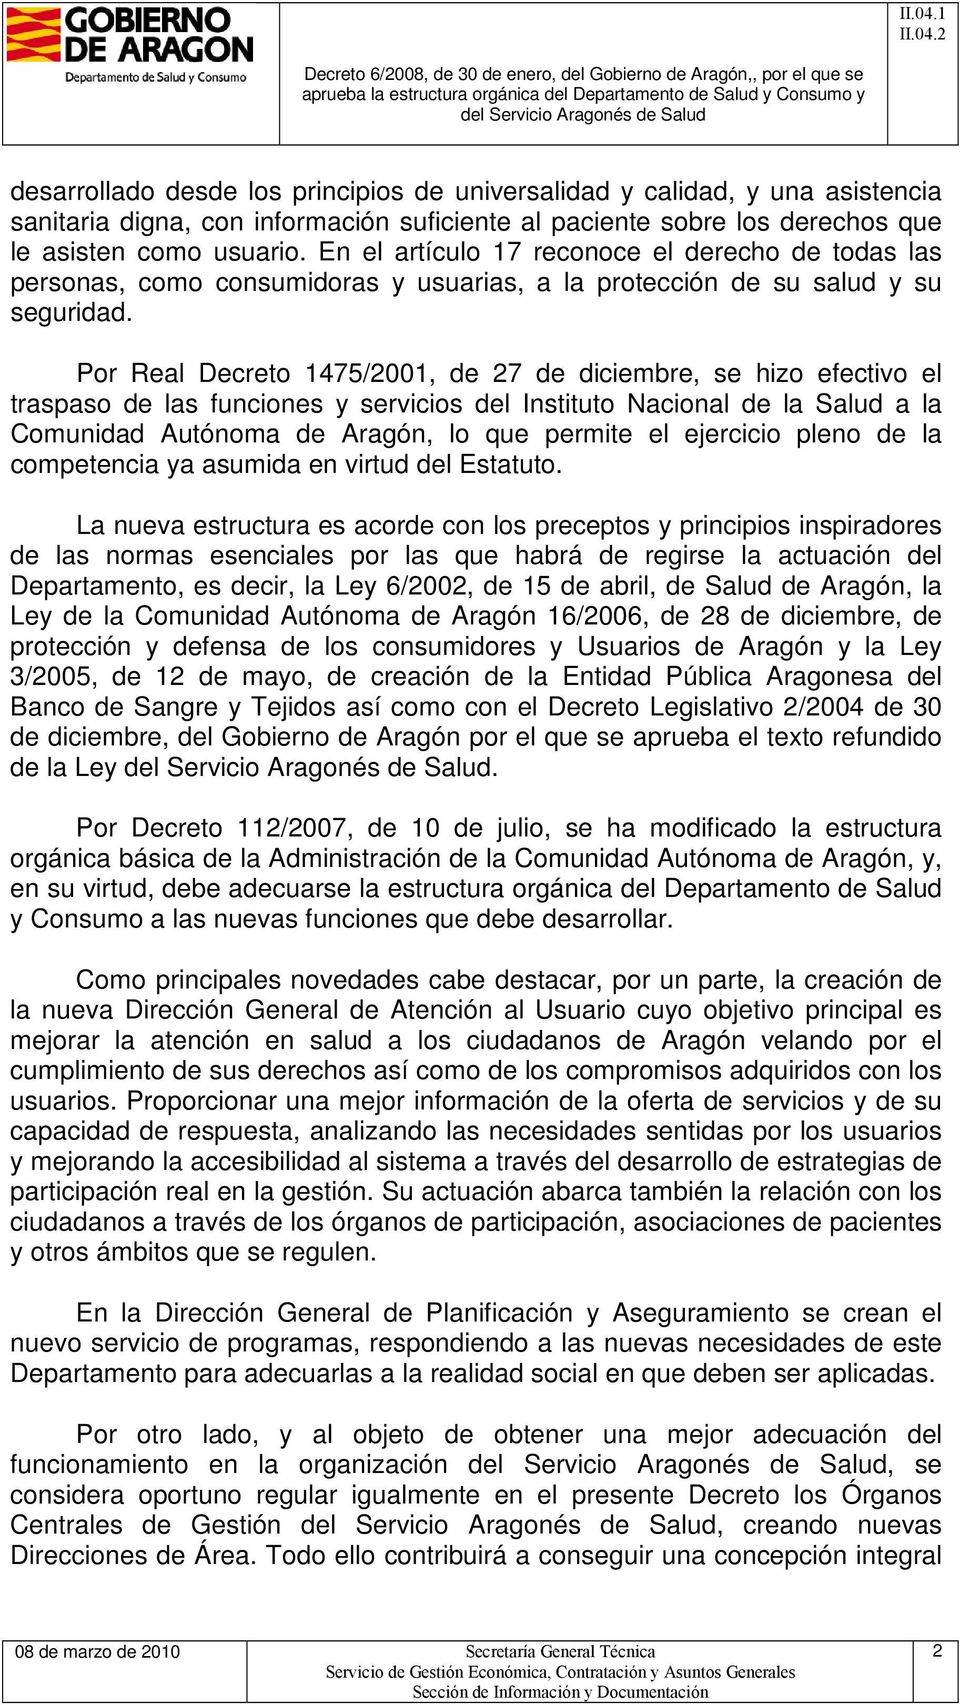 Por Real Decreto 1475/2001, de 27 de diciembre, se hizo efectivo el traspaso de las funciones y servicios del Instituto Nacional de la Salud a la Comunidad Autónoma de Aragón, lo que permite el